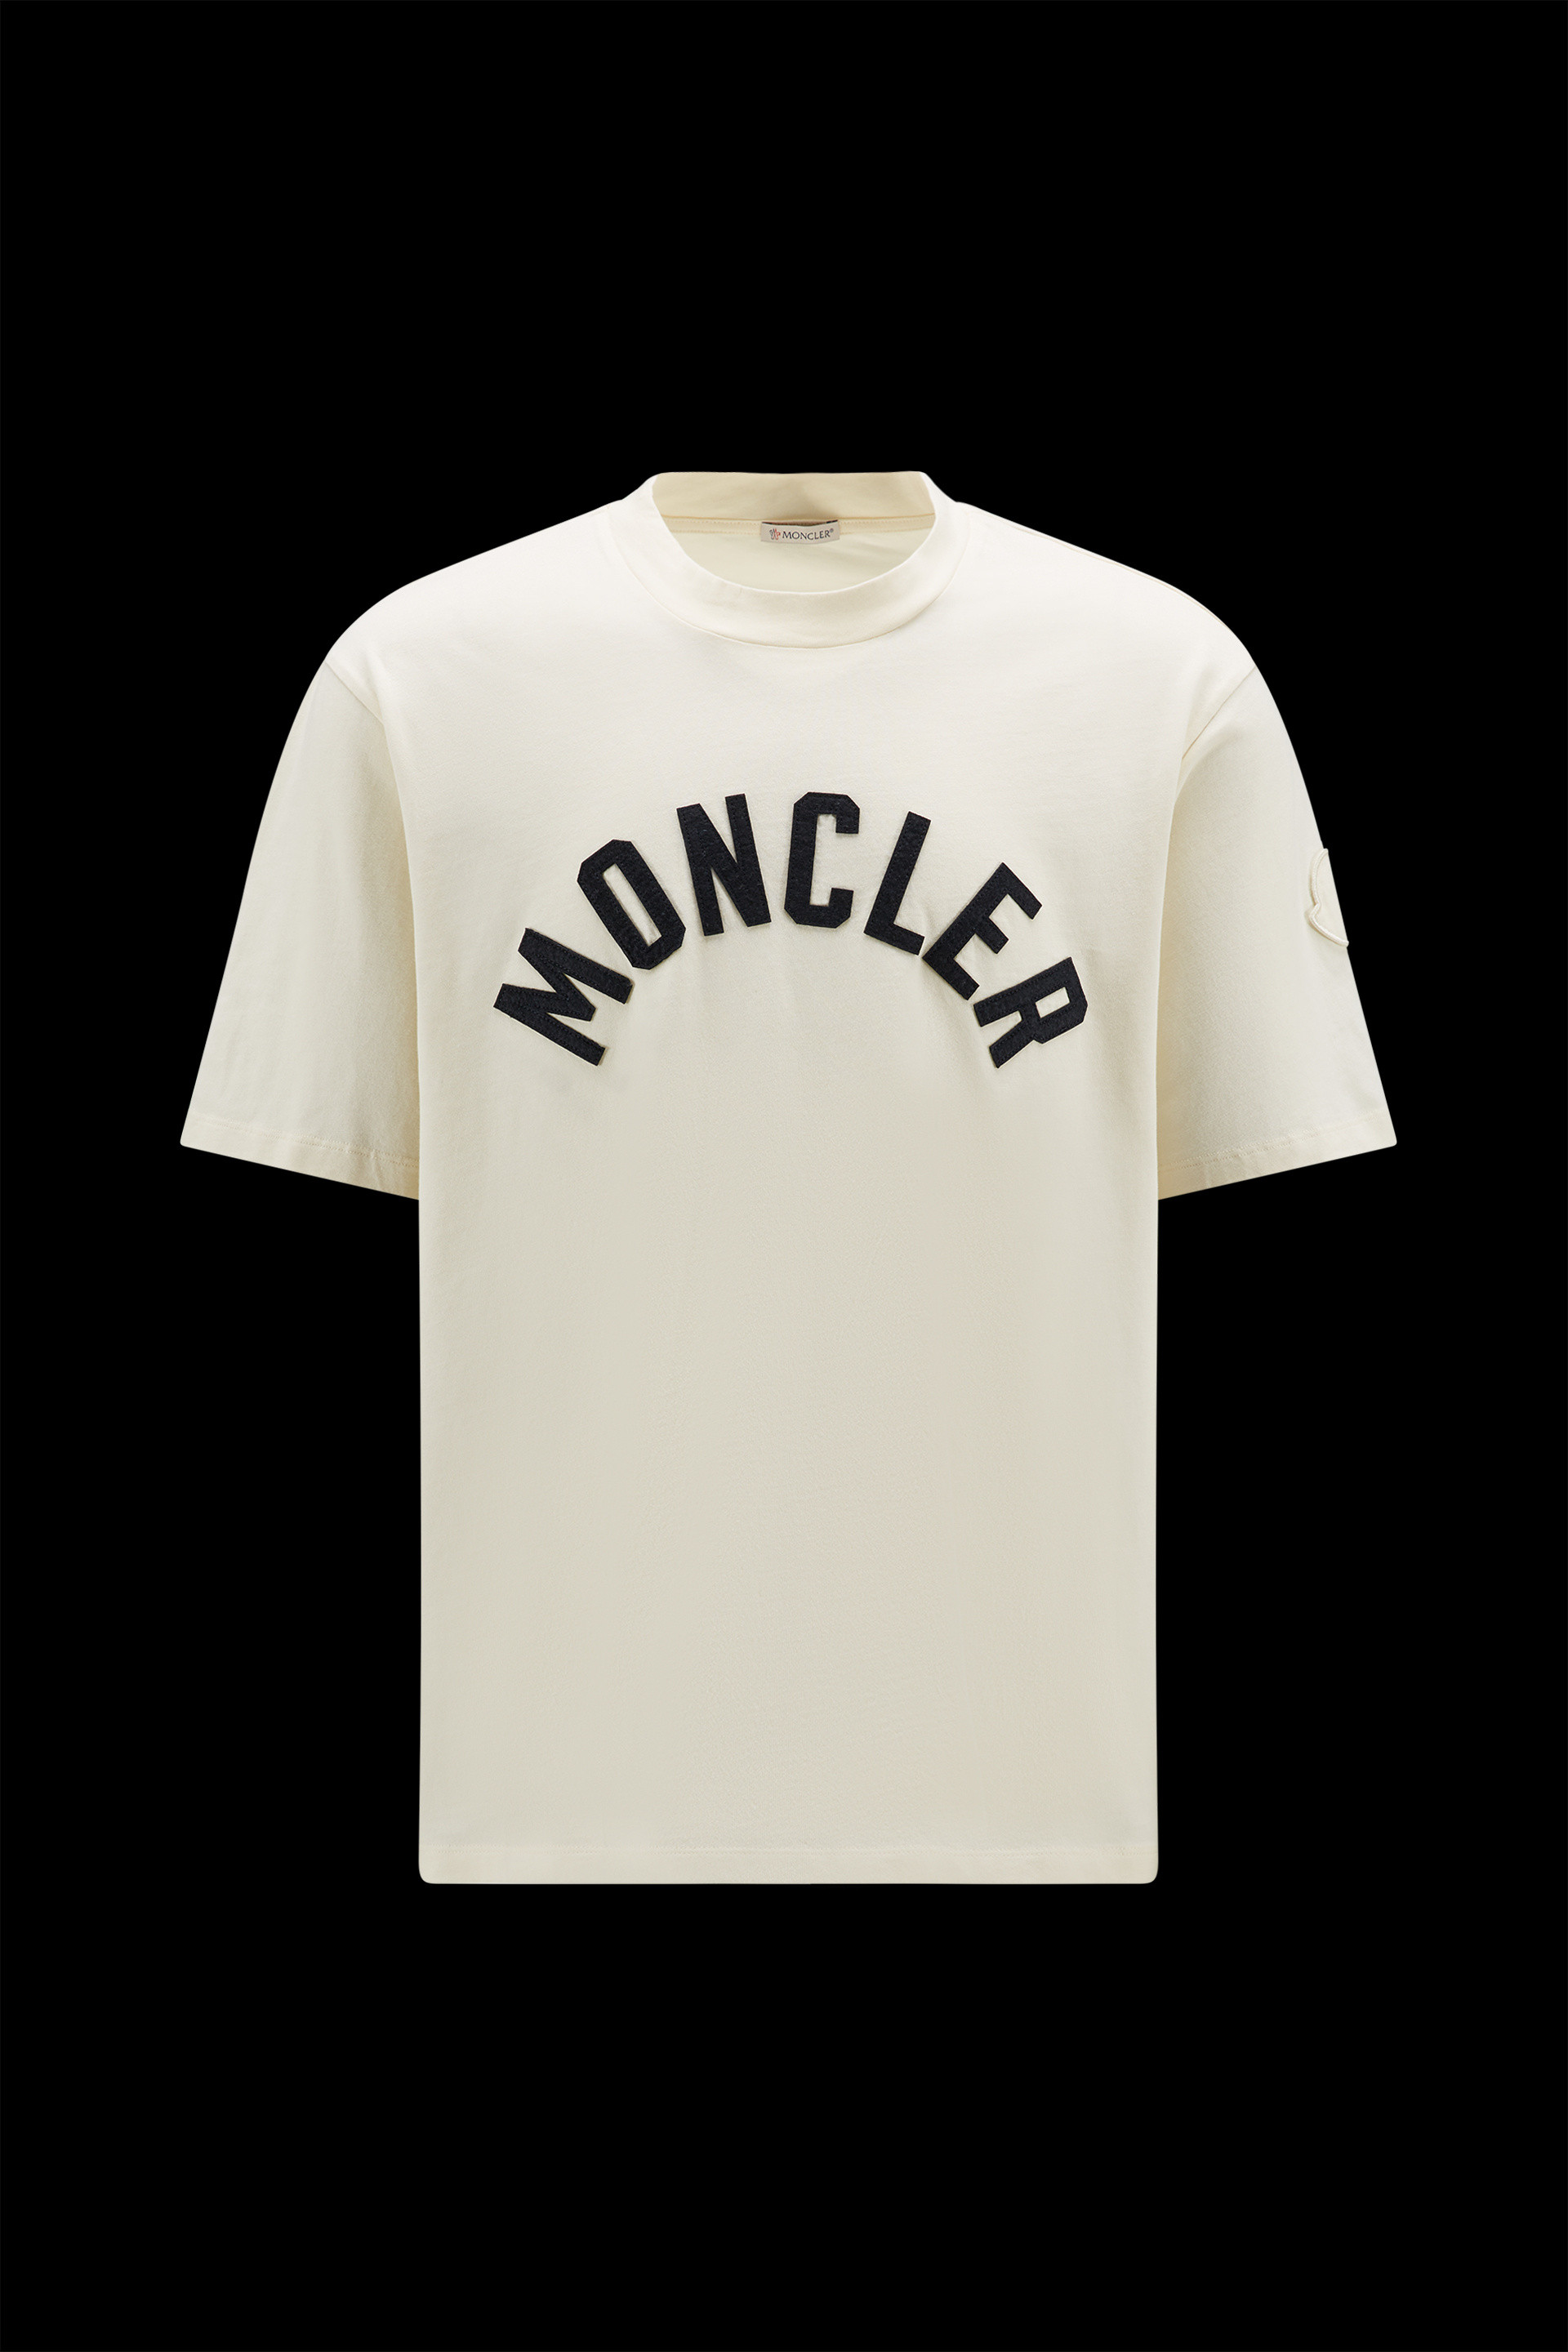 新品本物 MONCLER☆Tシャツ Tシャツ/カットソー(半袖/袖なし)